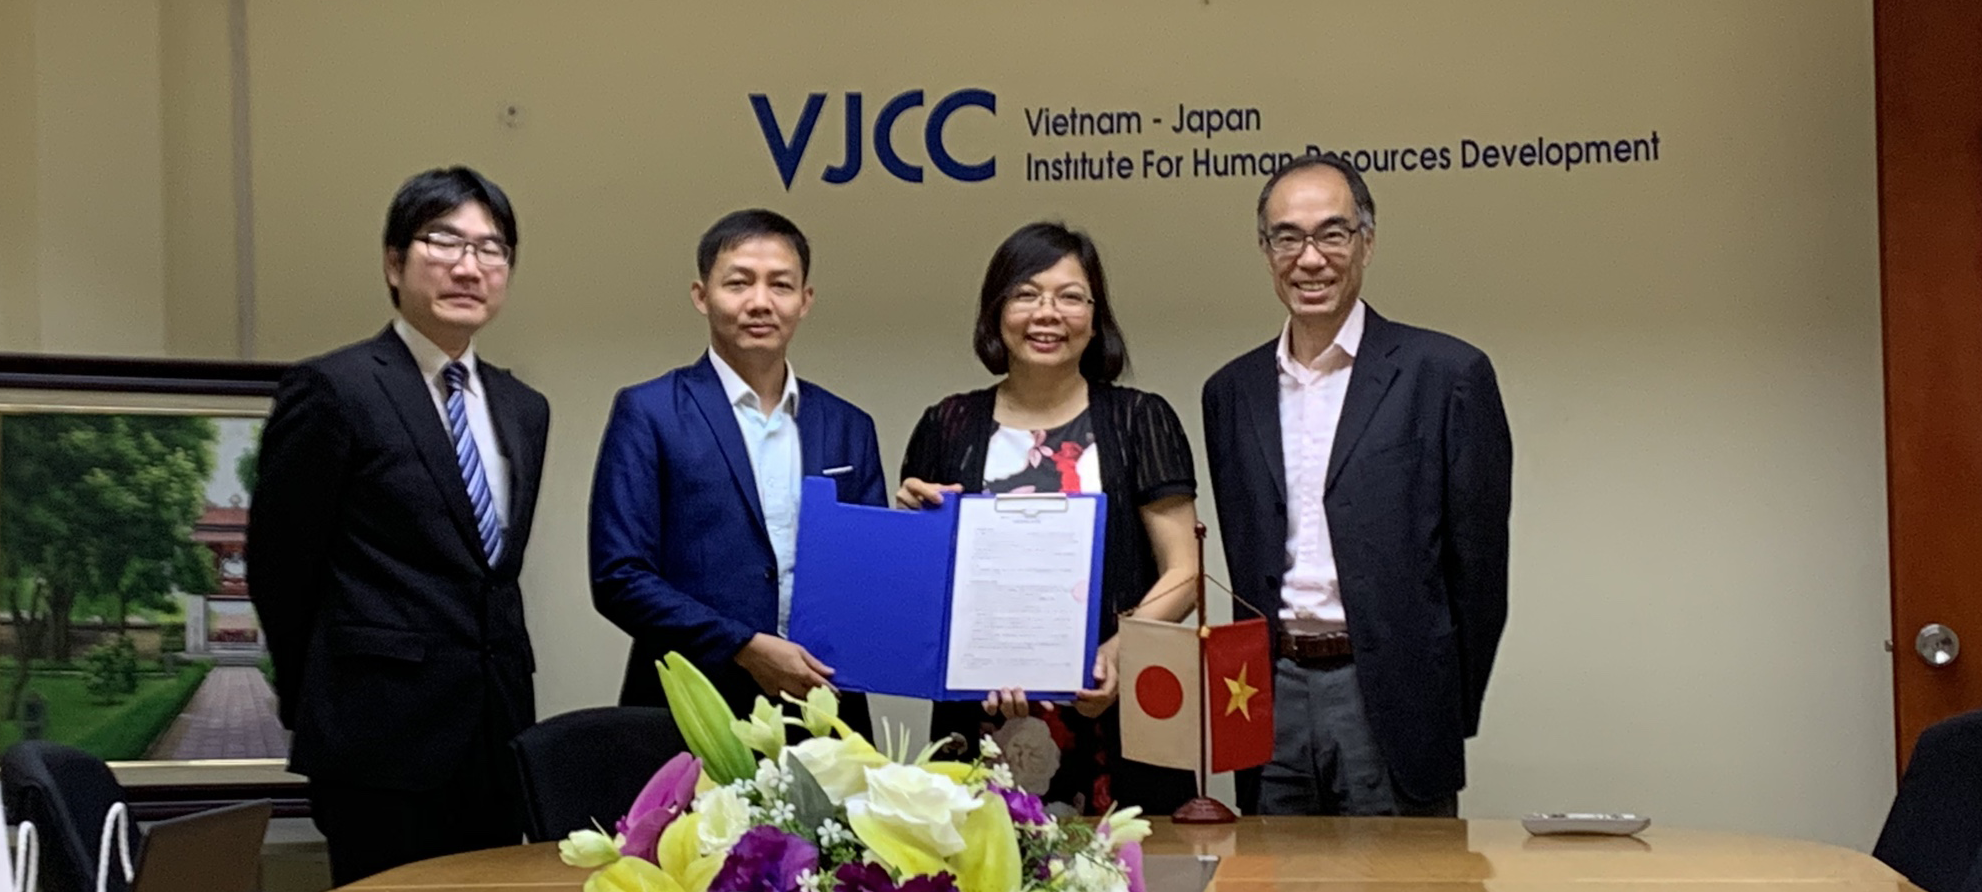 同意書に署名し手にするVJCCヒエン所長（右から2番目）と 国際大学VJCC共同事務所代表のラム所長（左から2番目）